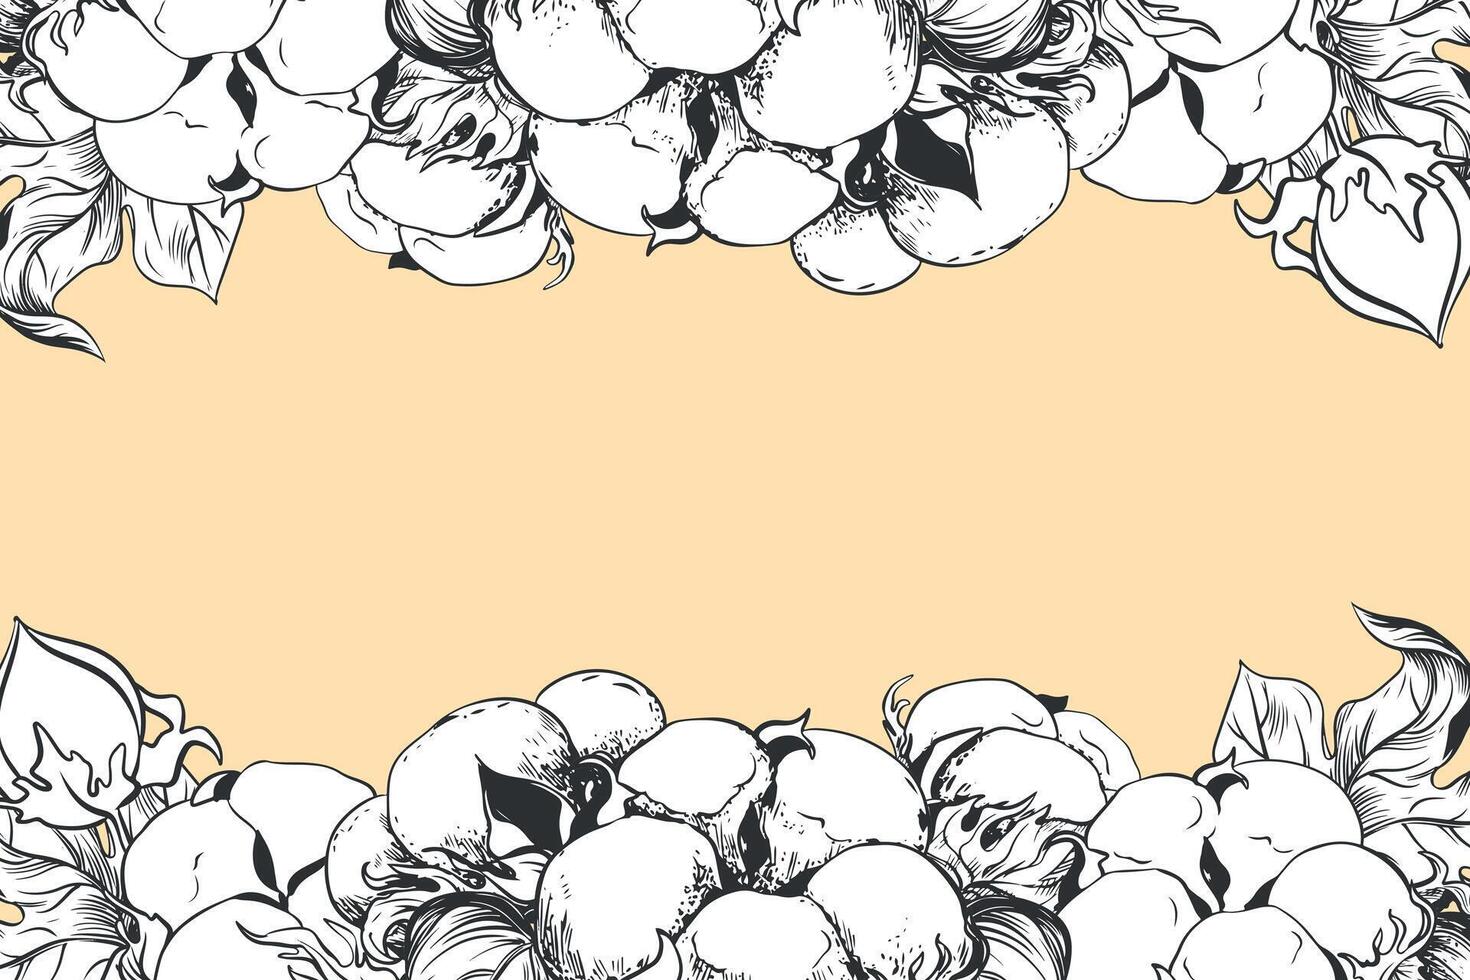 rektangulär horisontell ram med bomull blommor och Plats för text. linjär skiss av vit bomull bollar, löv och grenar. retro bläck vektor illustration. design för märka, märka, bröllop inbjudan.